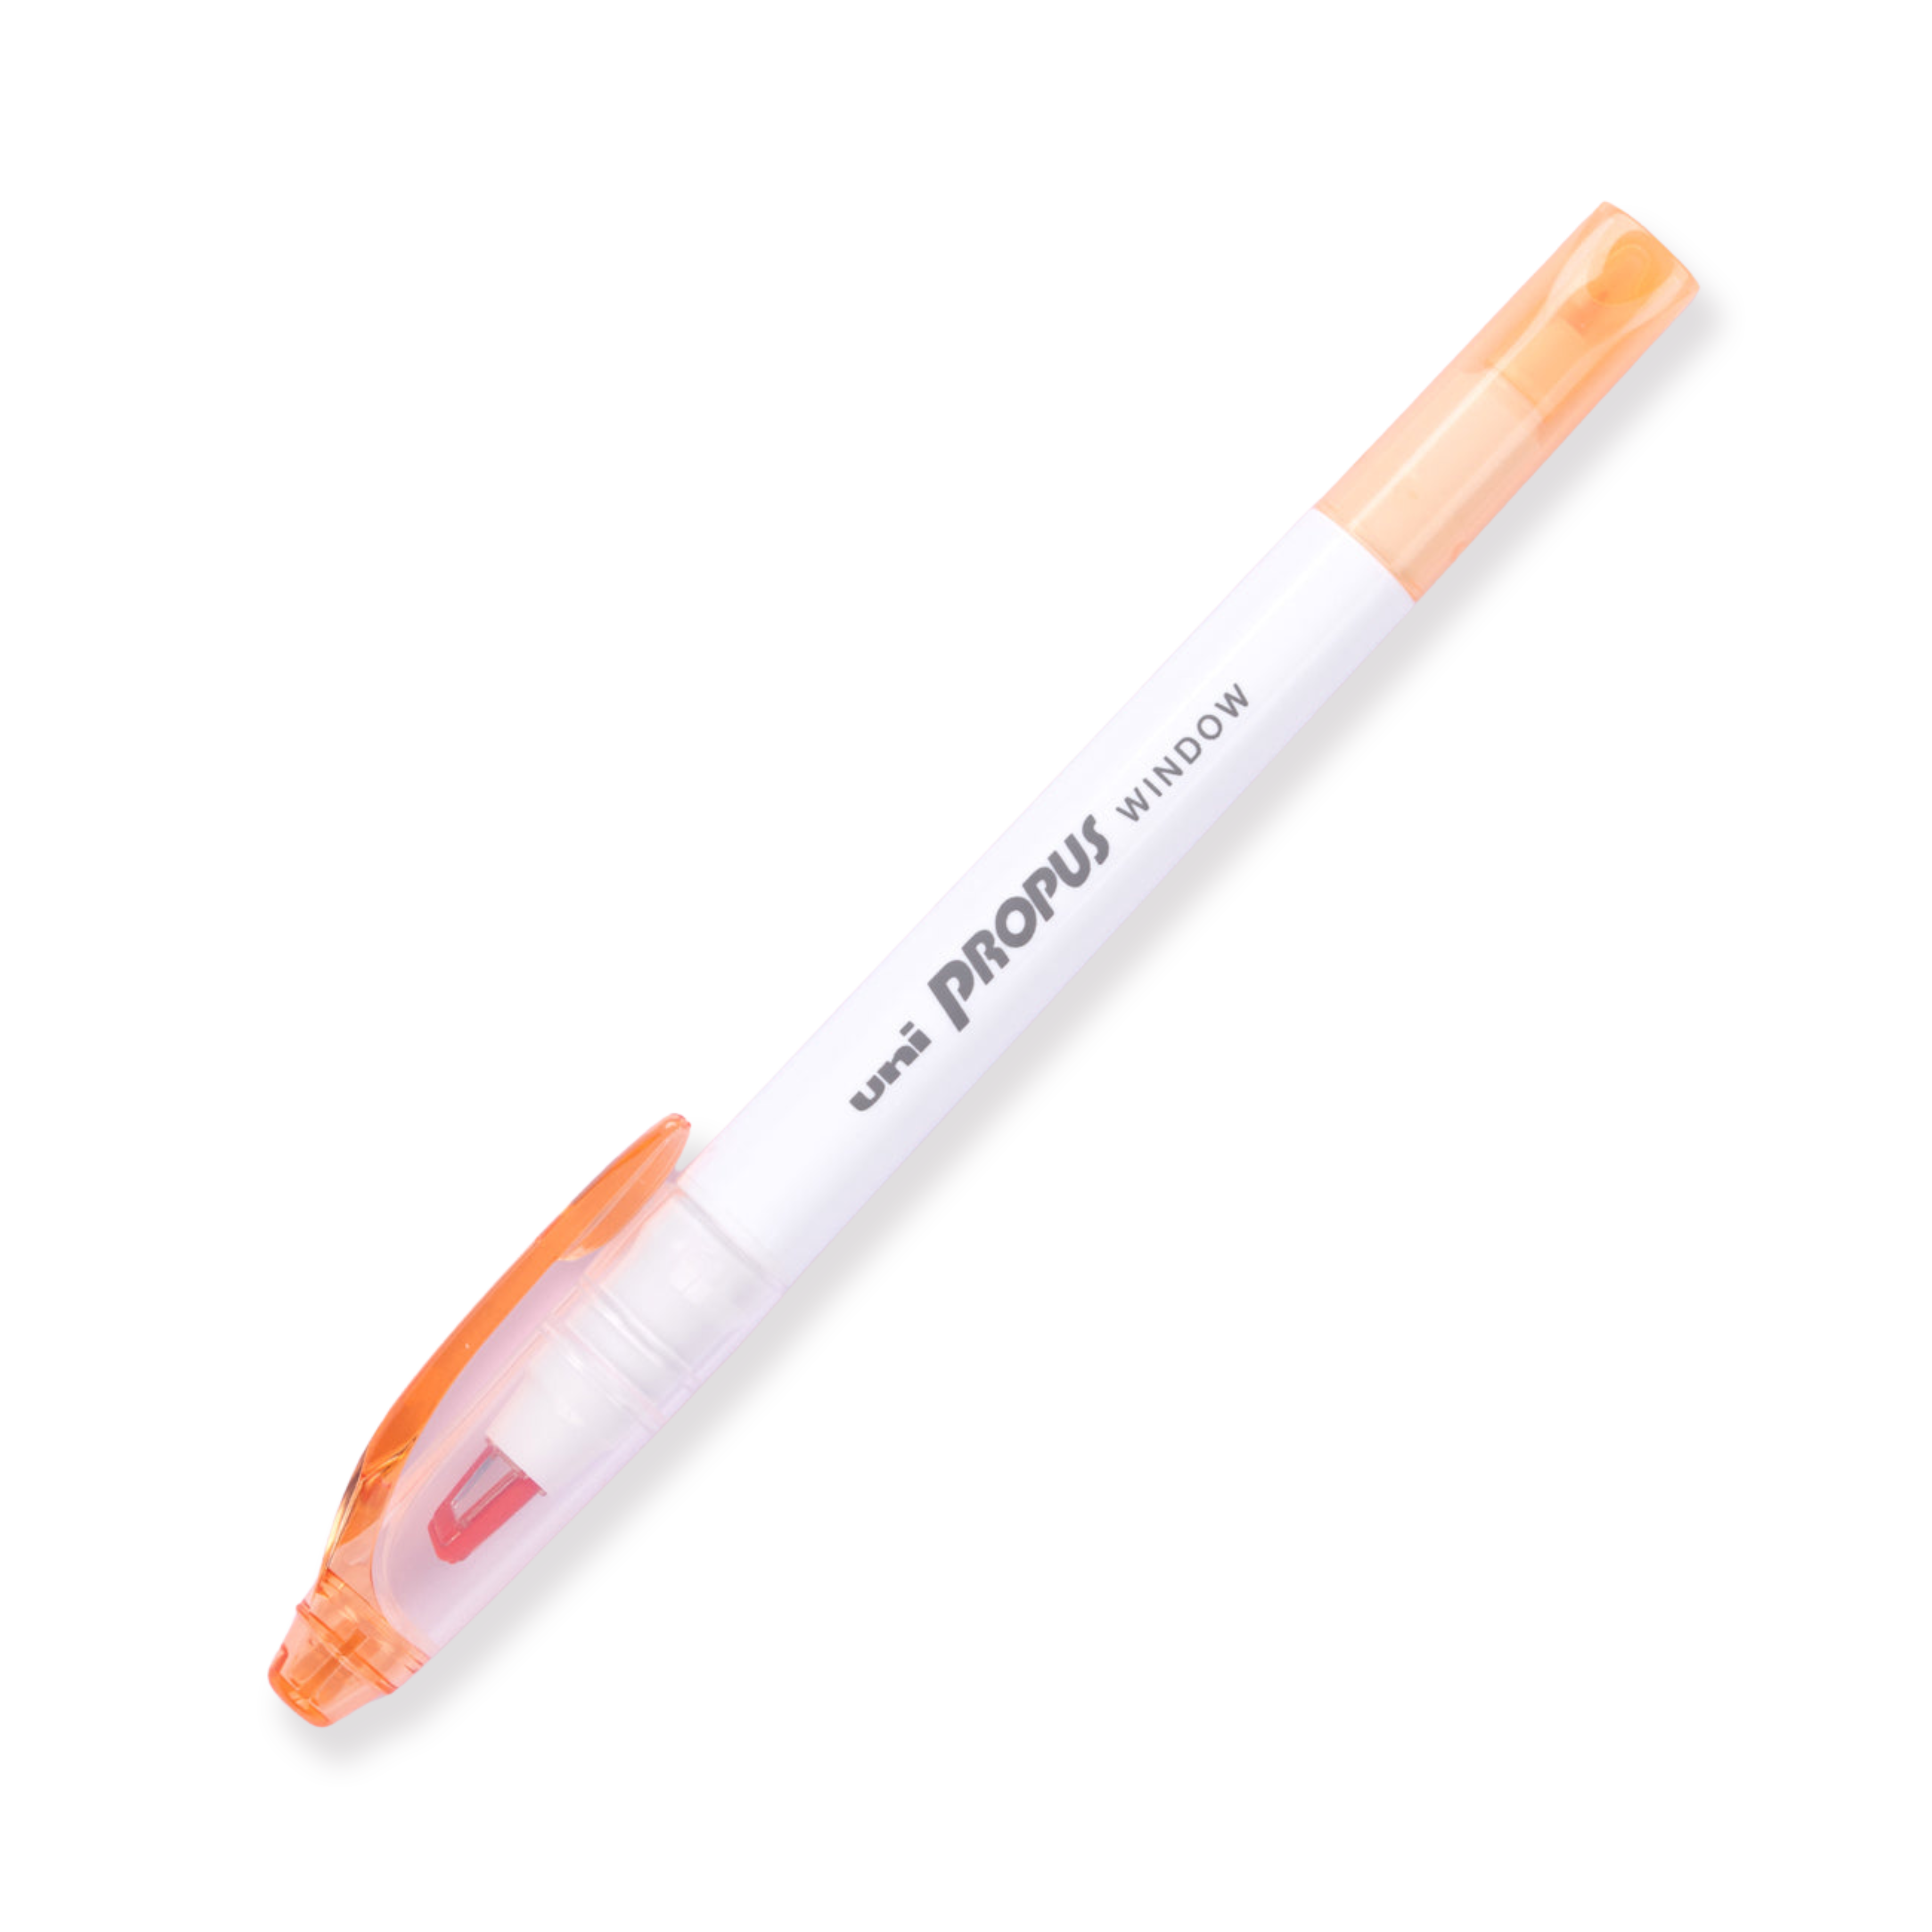 Resaltador de doble cara Uni Propus Window - Naranja ahumado - Nuevo color 2020